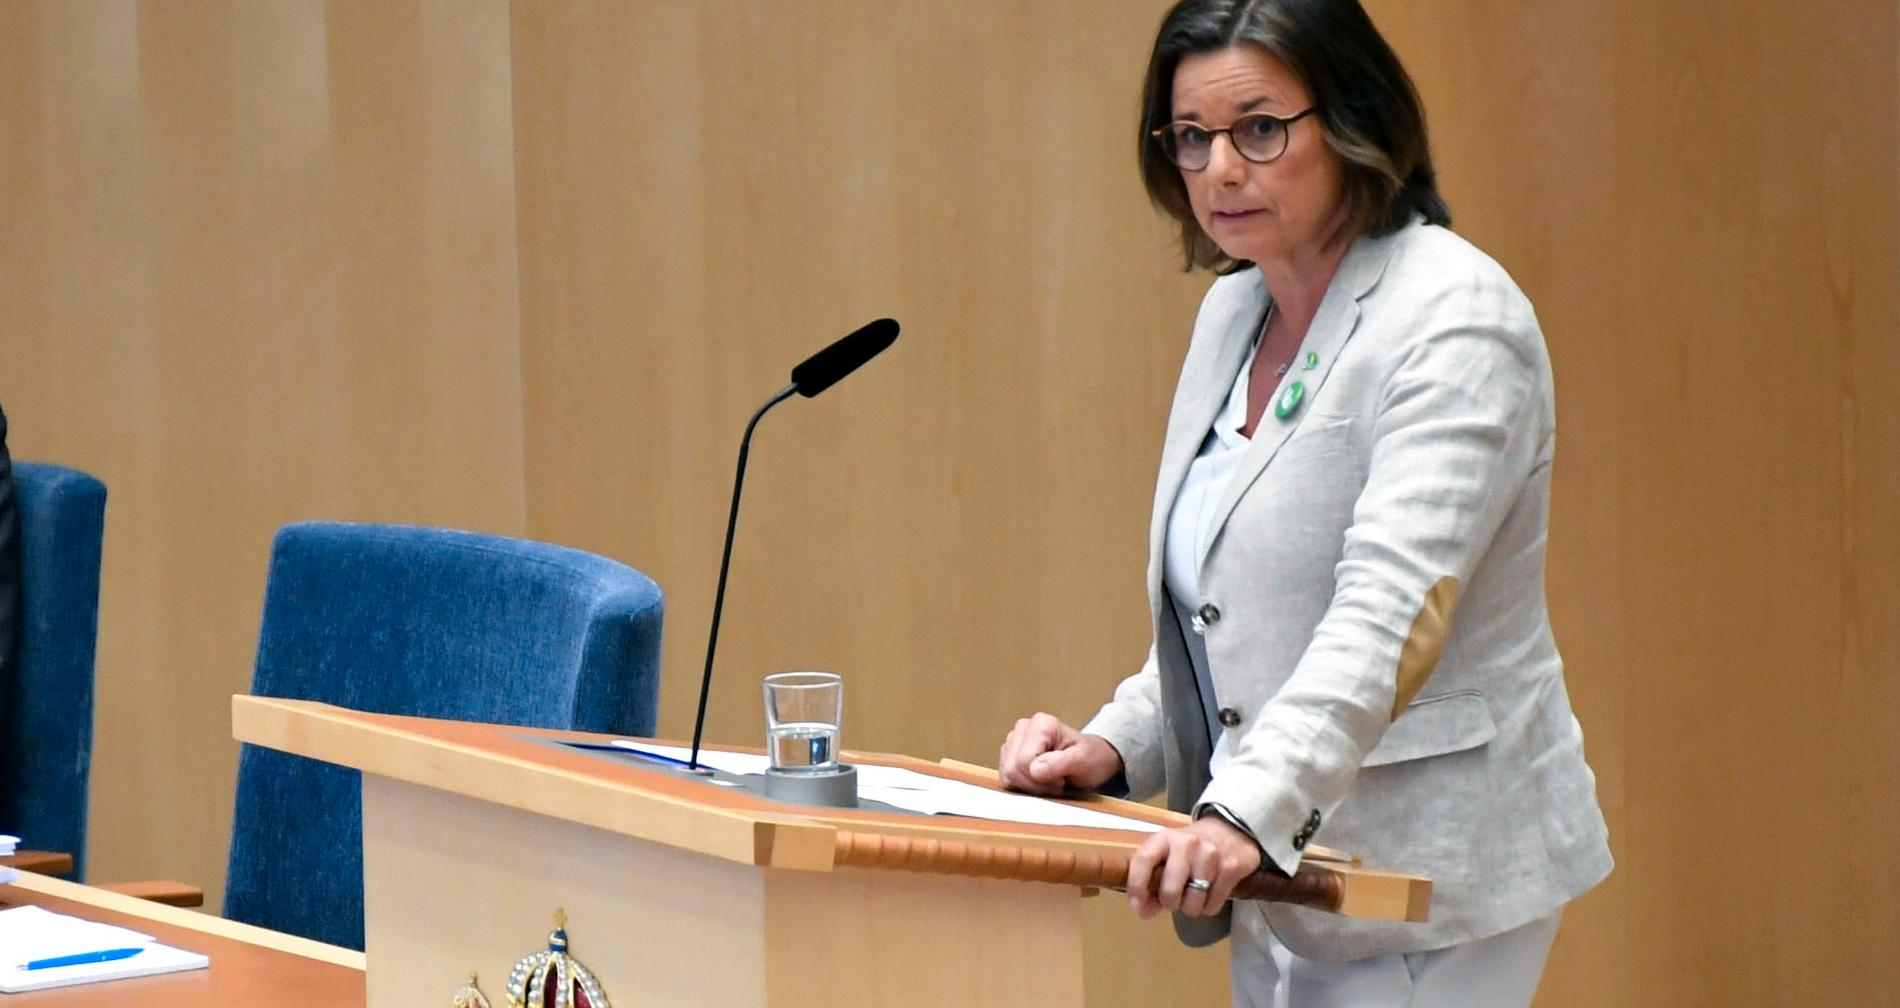 Isabella Lövin sa i dagens partiledardebatt att klimatpolitiken blir den stora skiljelinjen i valet.